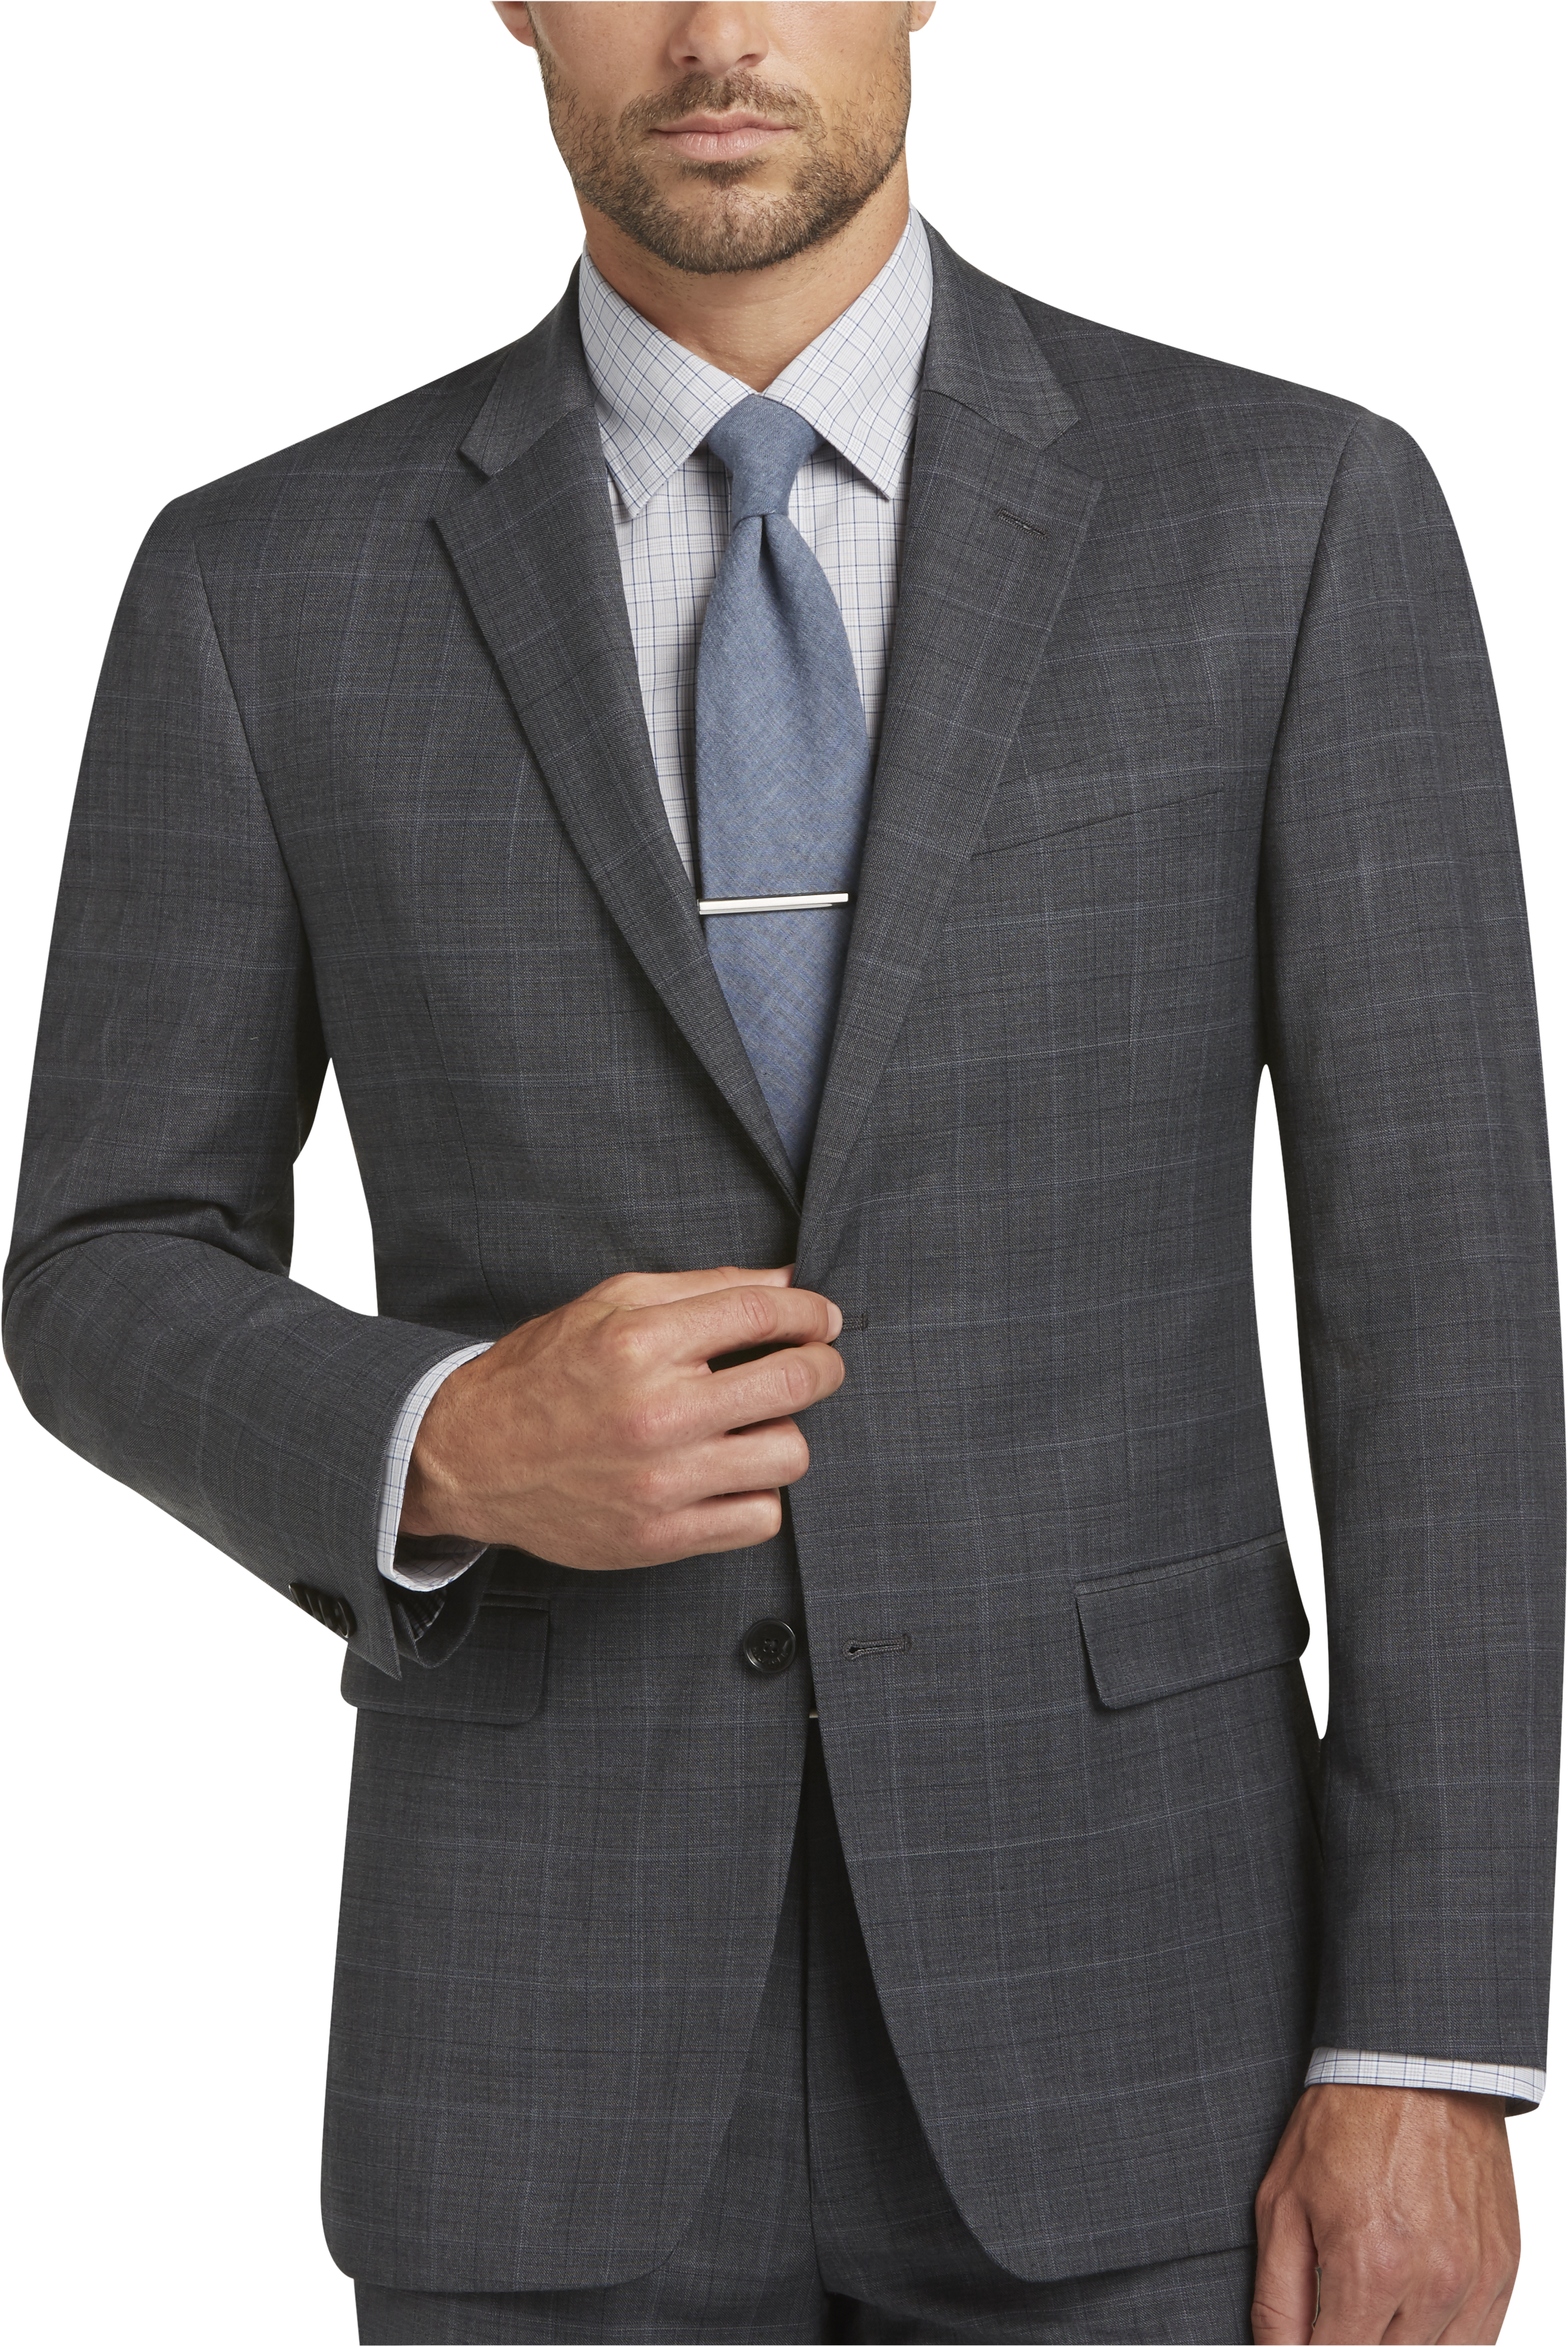 Gray Plaid Suit - Men's Suits - Tommy Hilfiger | Men's Wearhouse